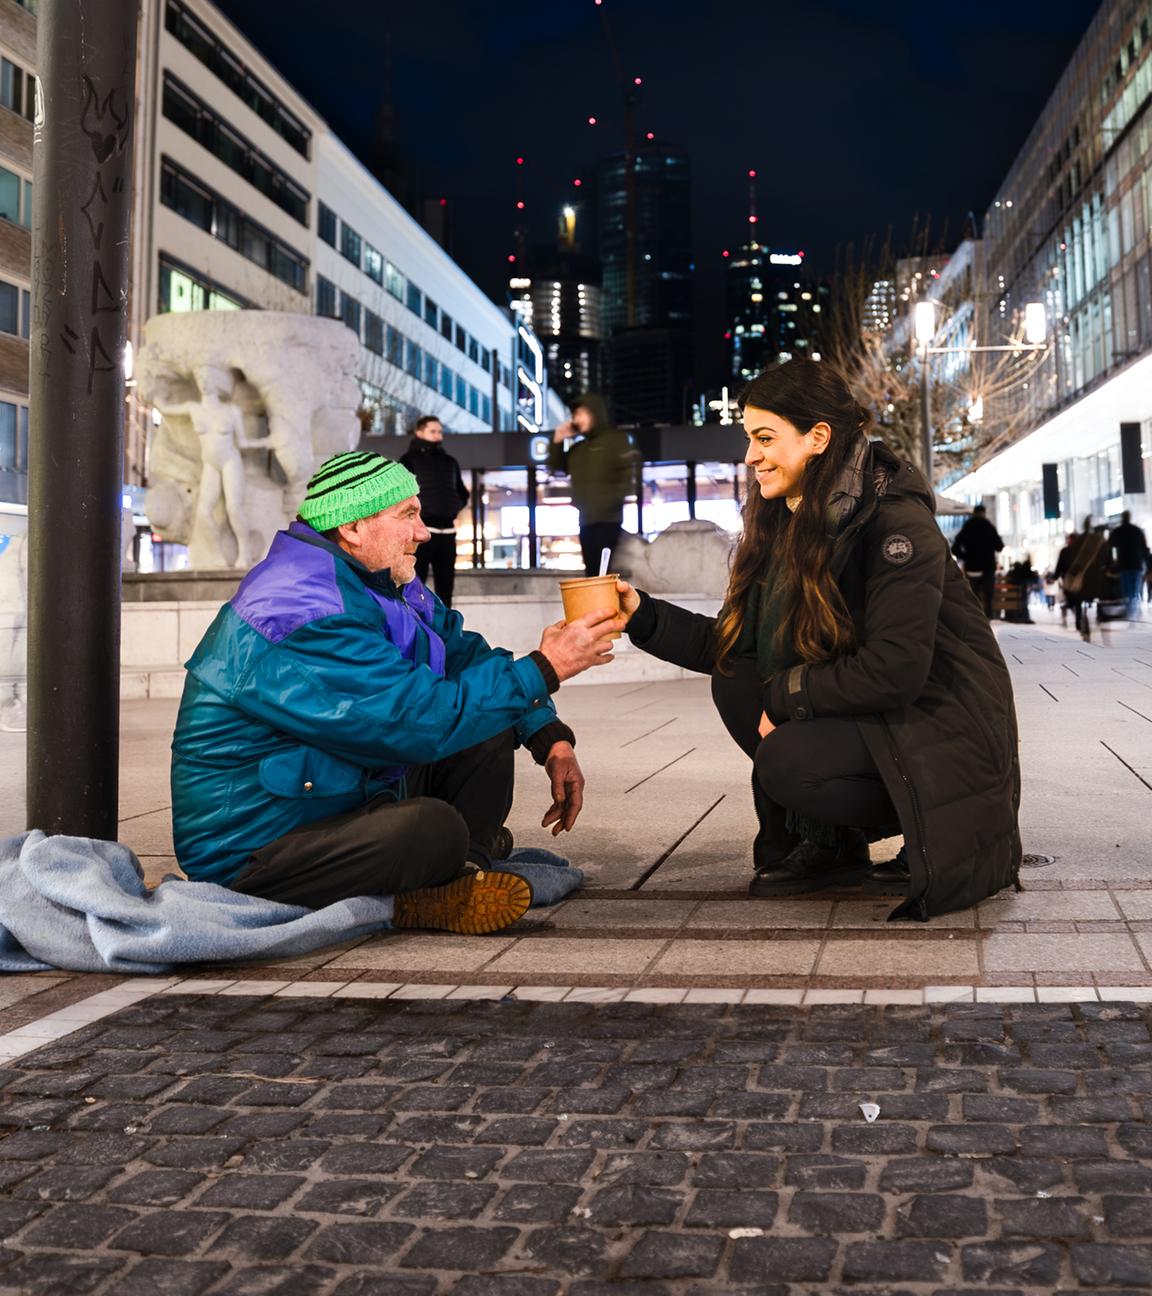 Es ist Nacht in der Frankfurter Fußgängerzone. Im Vordergrund sitzt ein obdachloser Mann mit grüner Mütze. Vor ihm kniet eine junge Frau mit langen schwarzen Haaren, die dem Obdachlosen einen Mahlzeit überreicht.